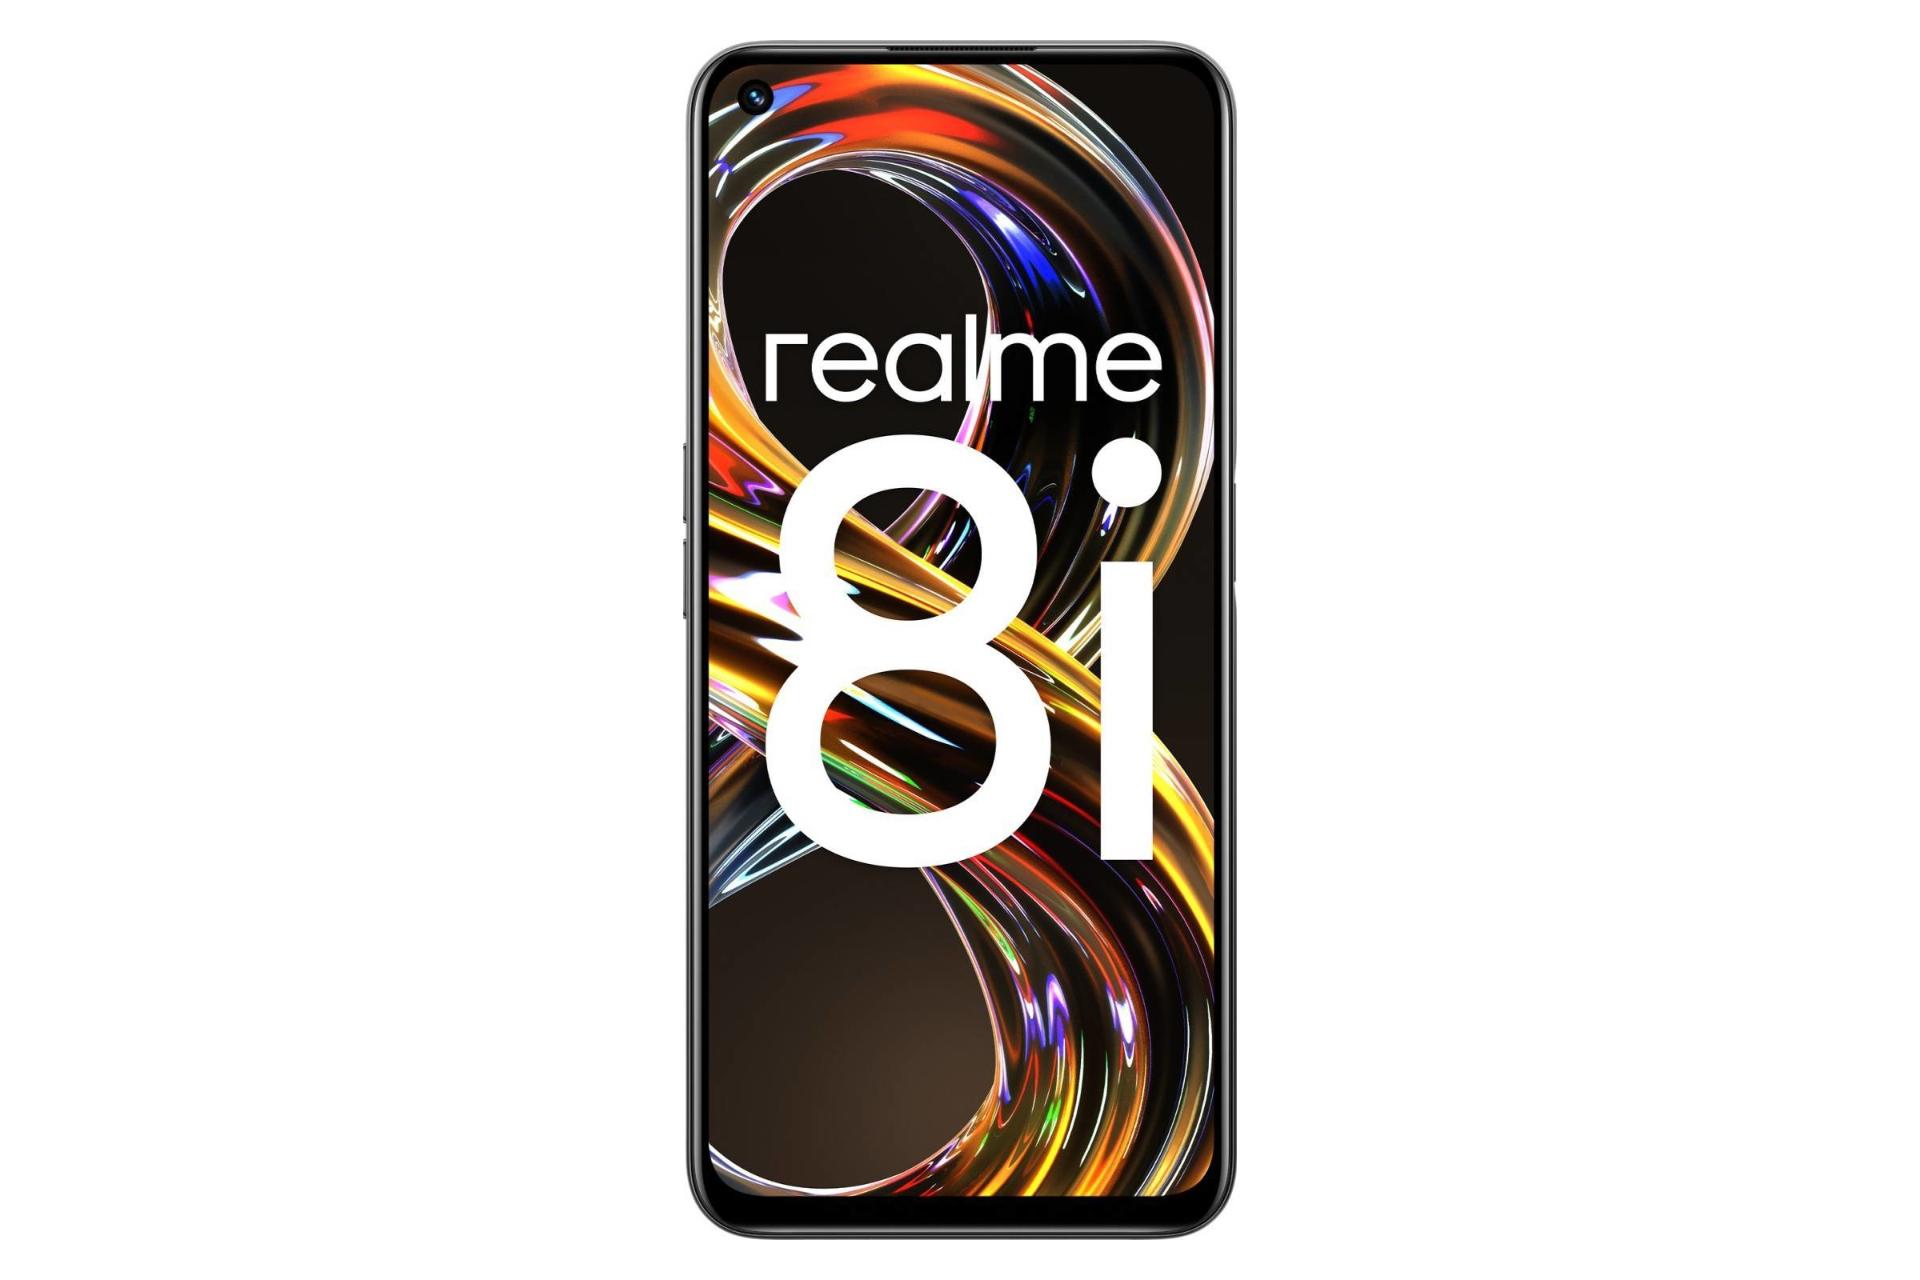 پنل جلو گوشی موبایل ریلمی 8 آی / Realme 8i